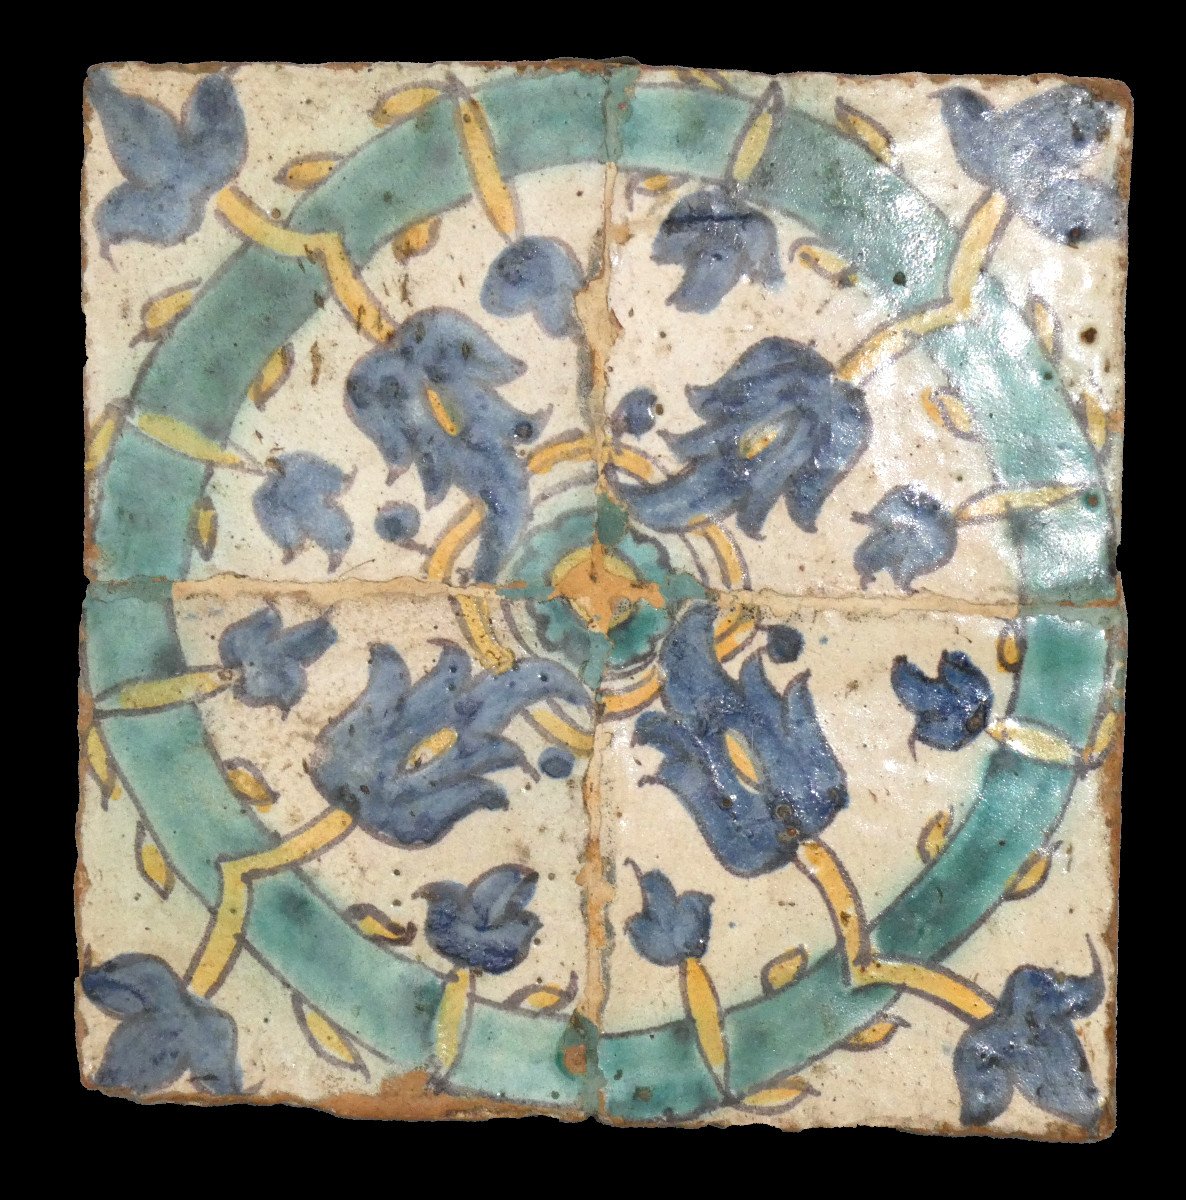 Four Spanish Earthenware Tiles, Valencia, Portugal, Azulejos, 18th Century, Tiles 